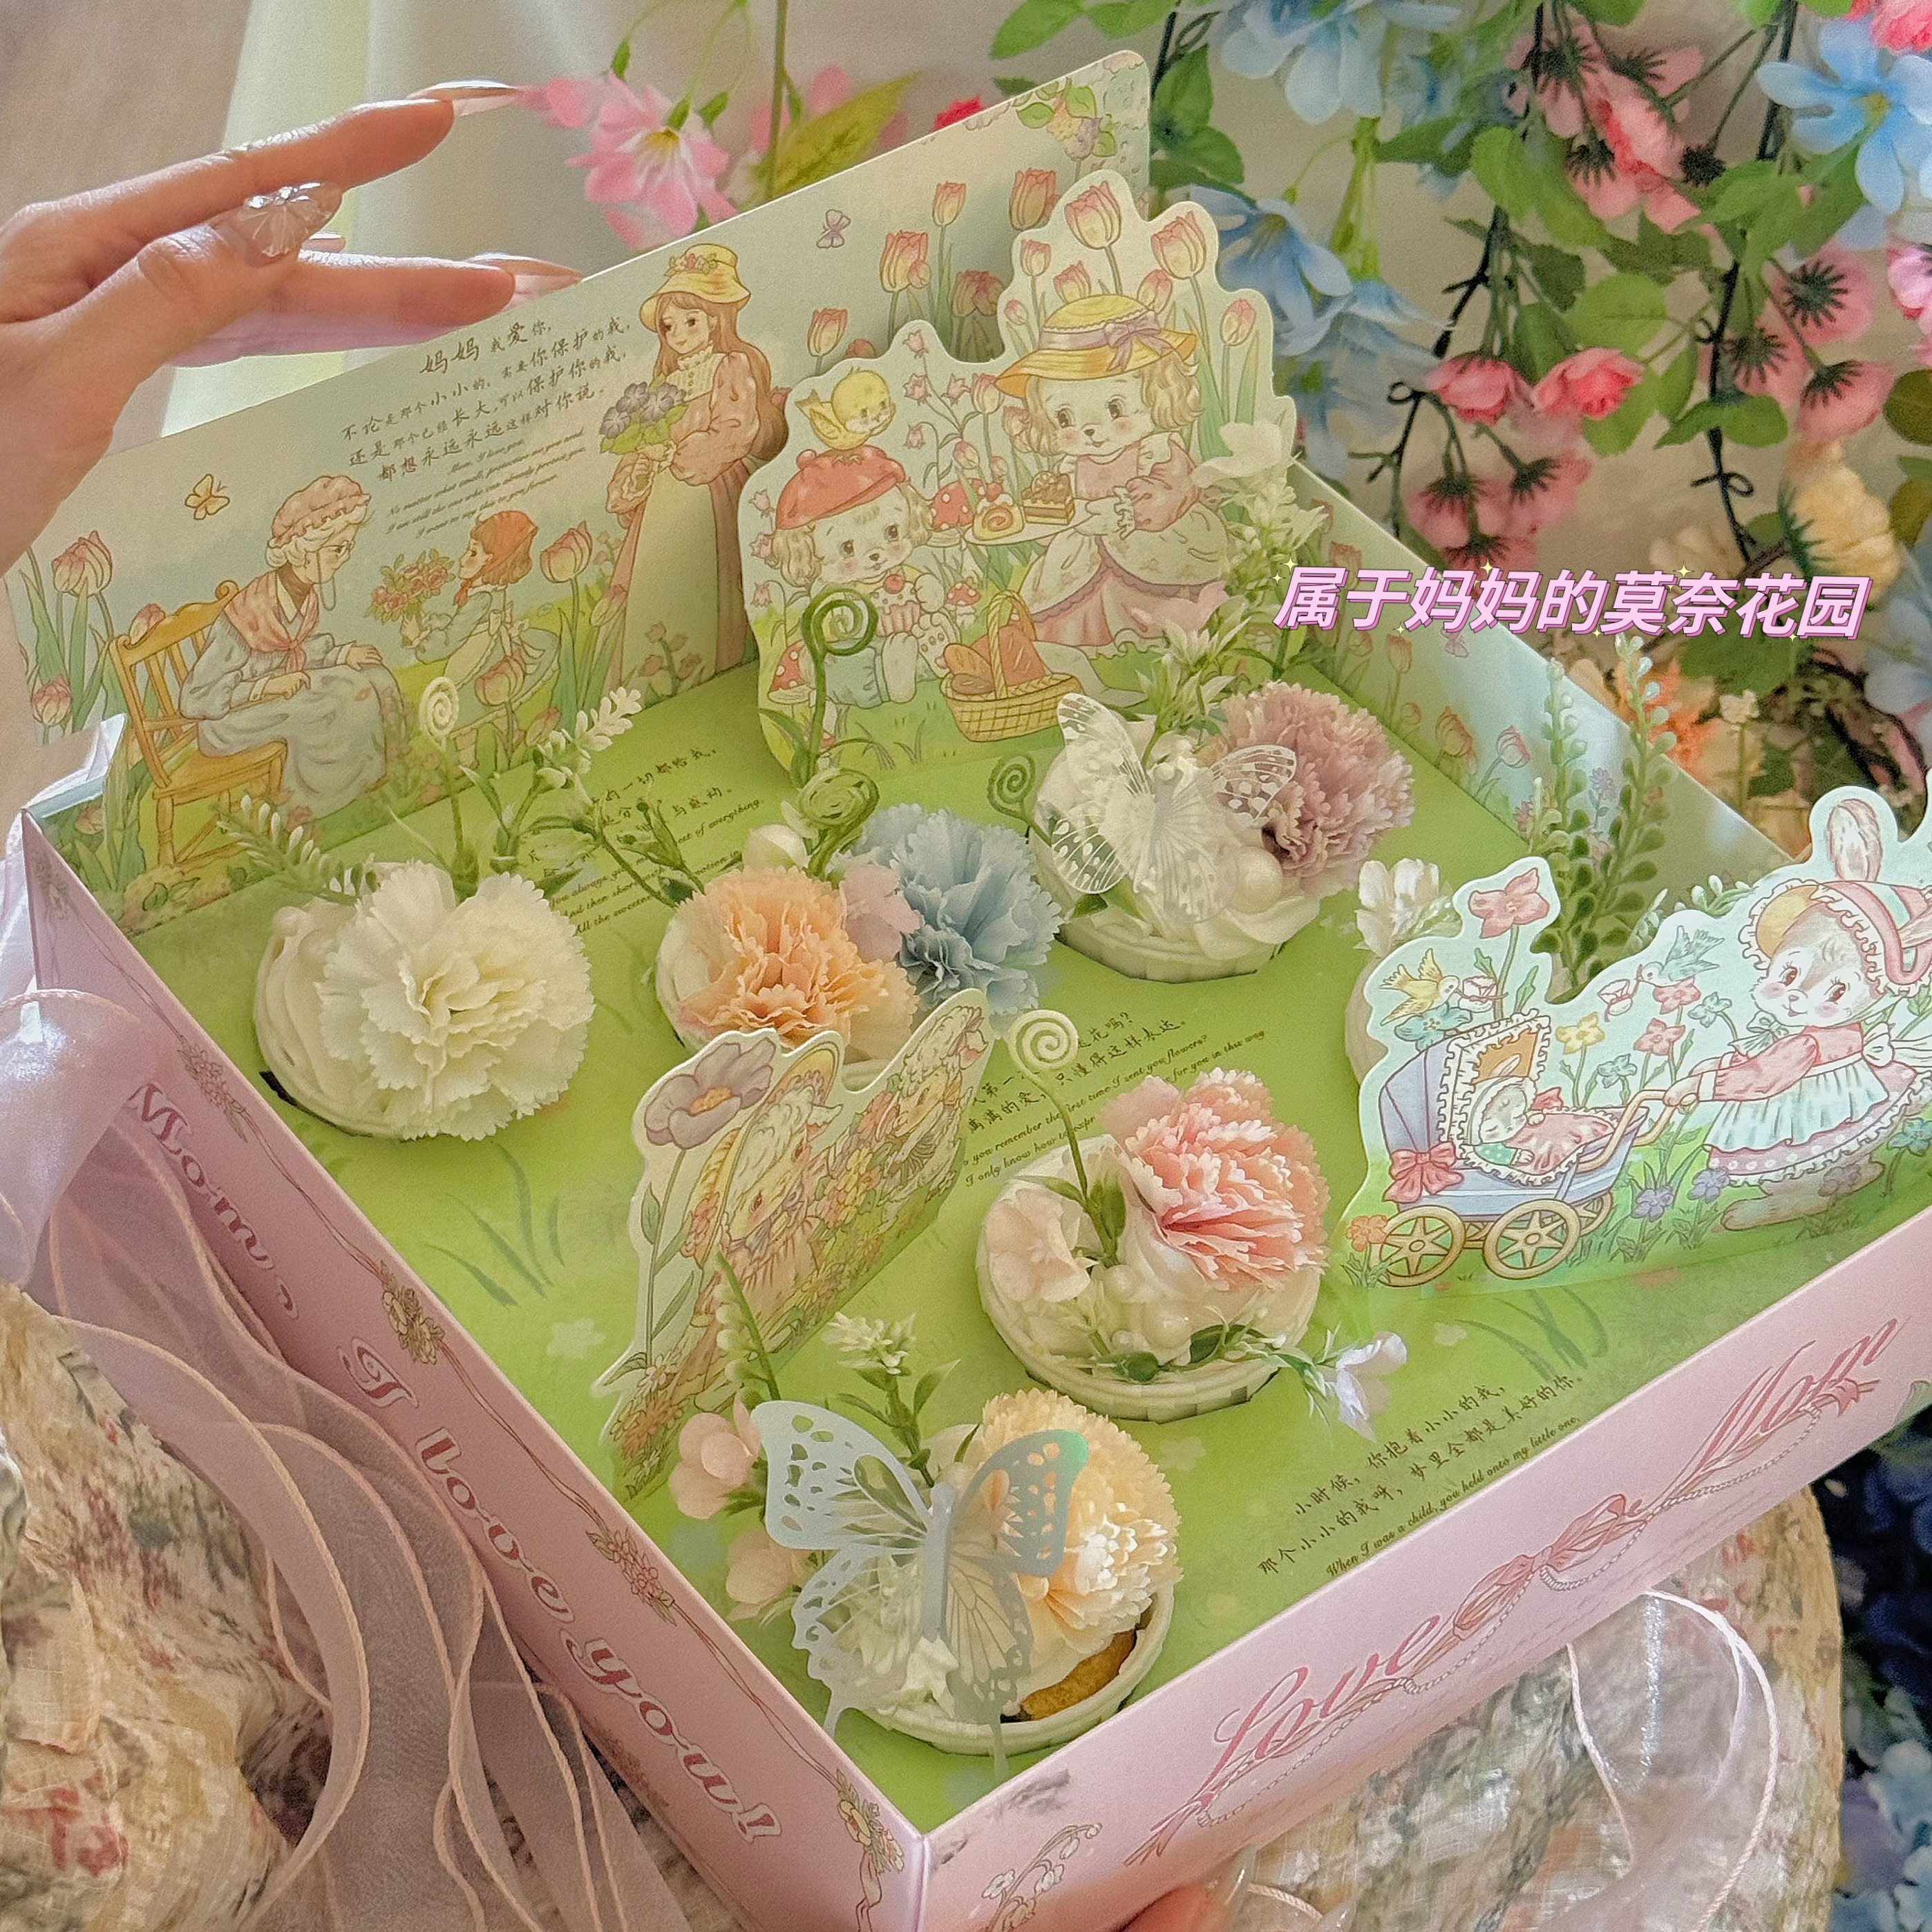 抱抱酱原创版权母亲节莫奈花园纸杯蛋糕盒花朵鲜花烘焙杯子包装盒